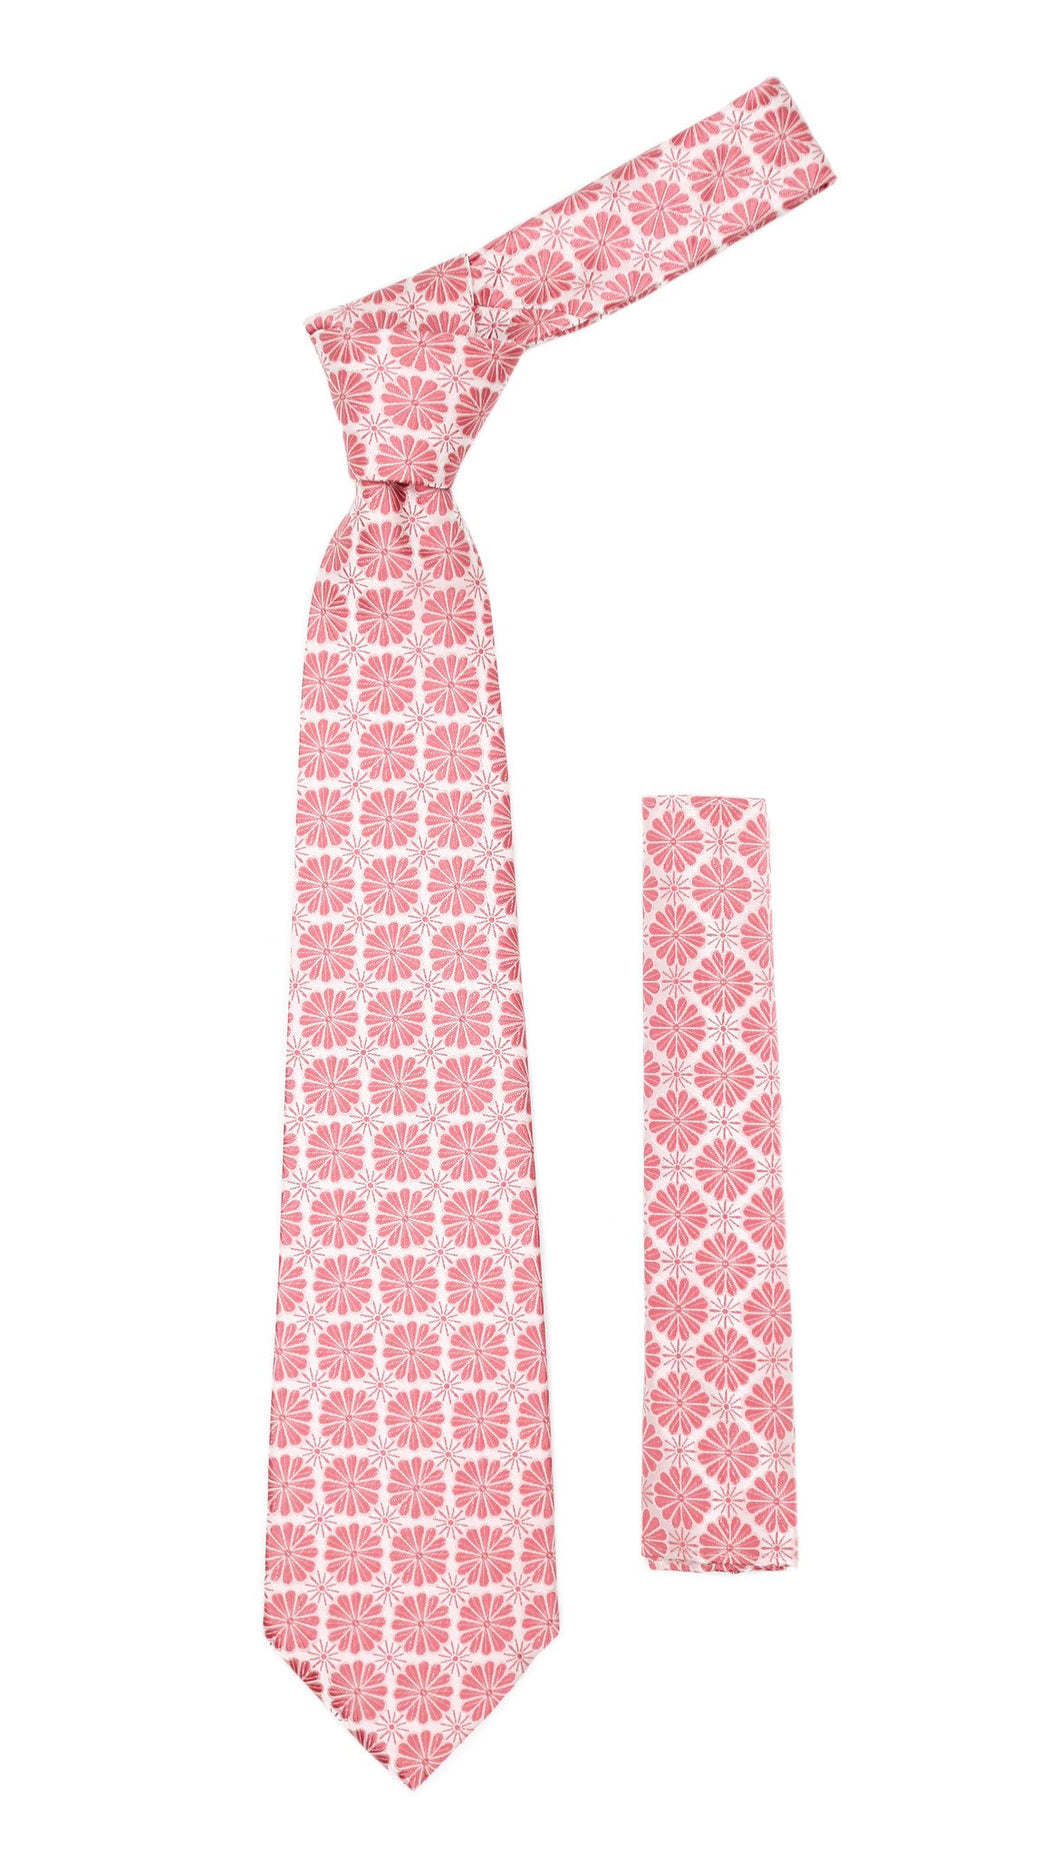 Floral Pink Necktie with Handkderchief Set - Ferrecci USA 